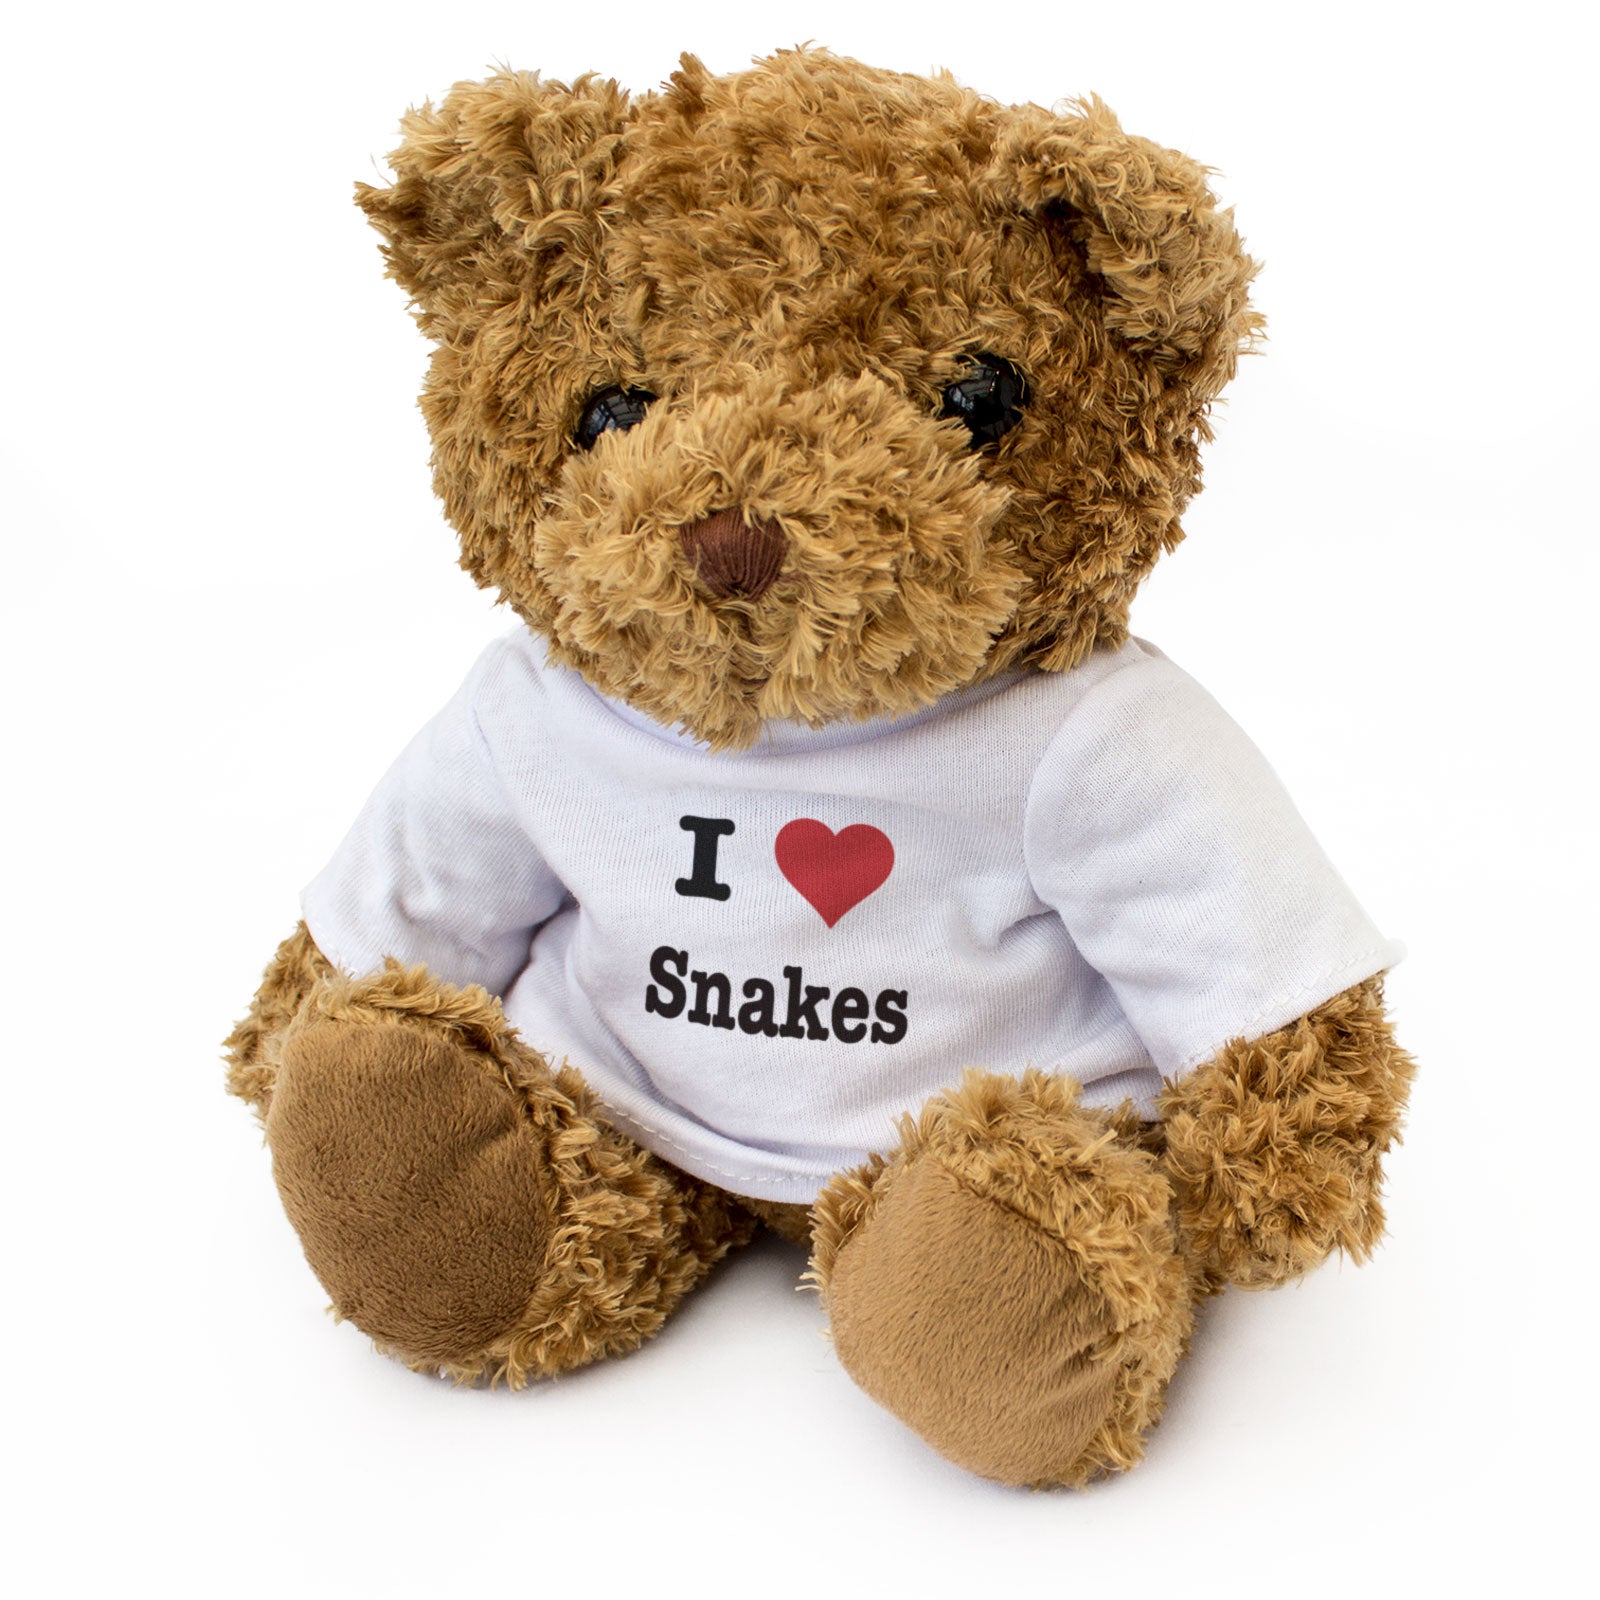 I Love Snakes - Teddy Bear